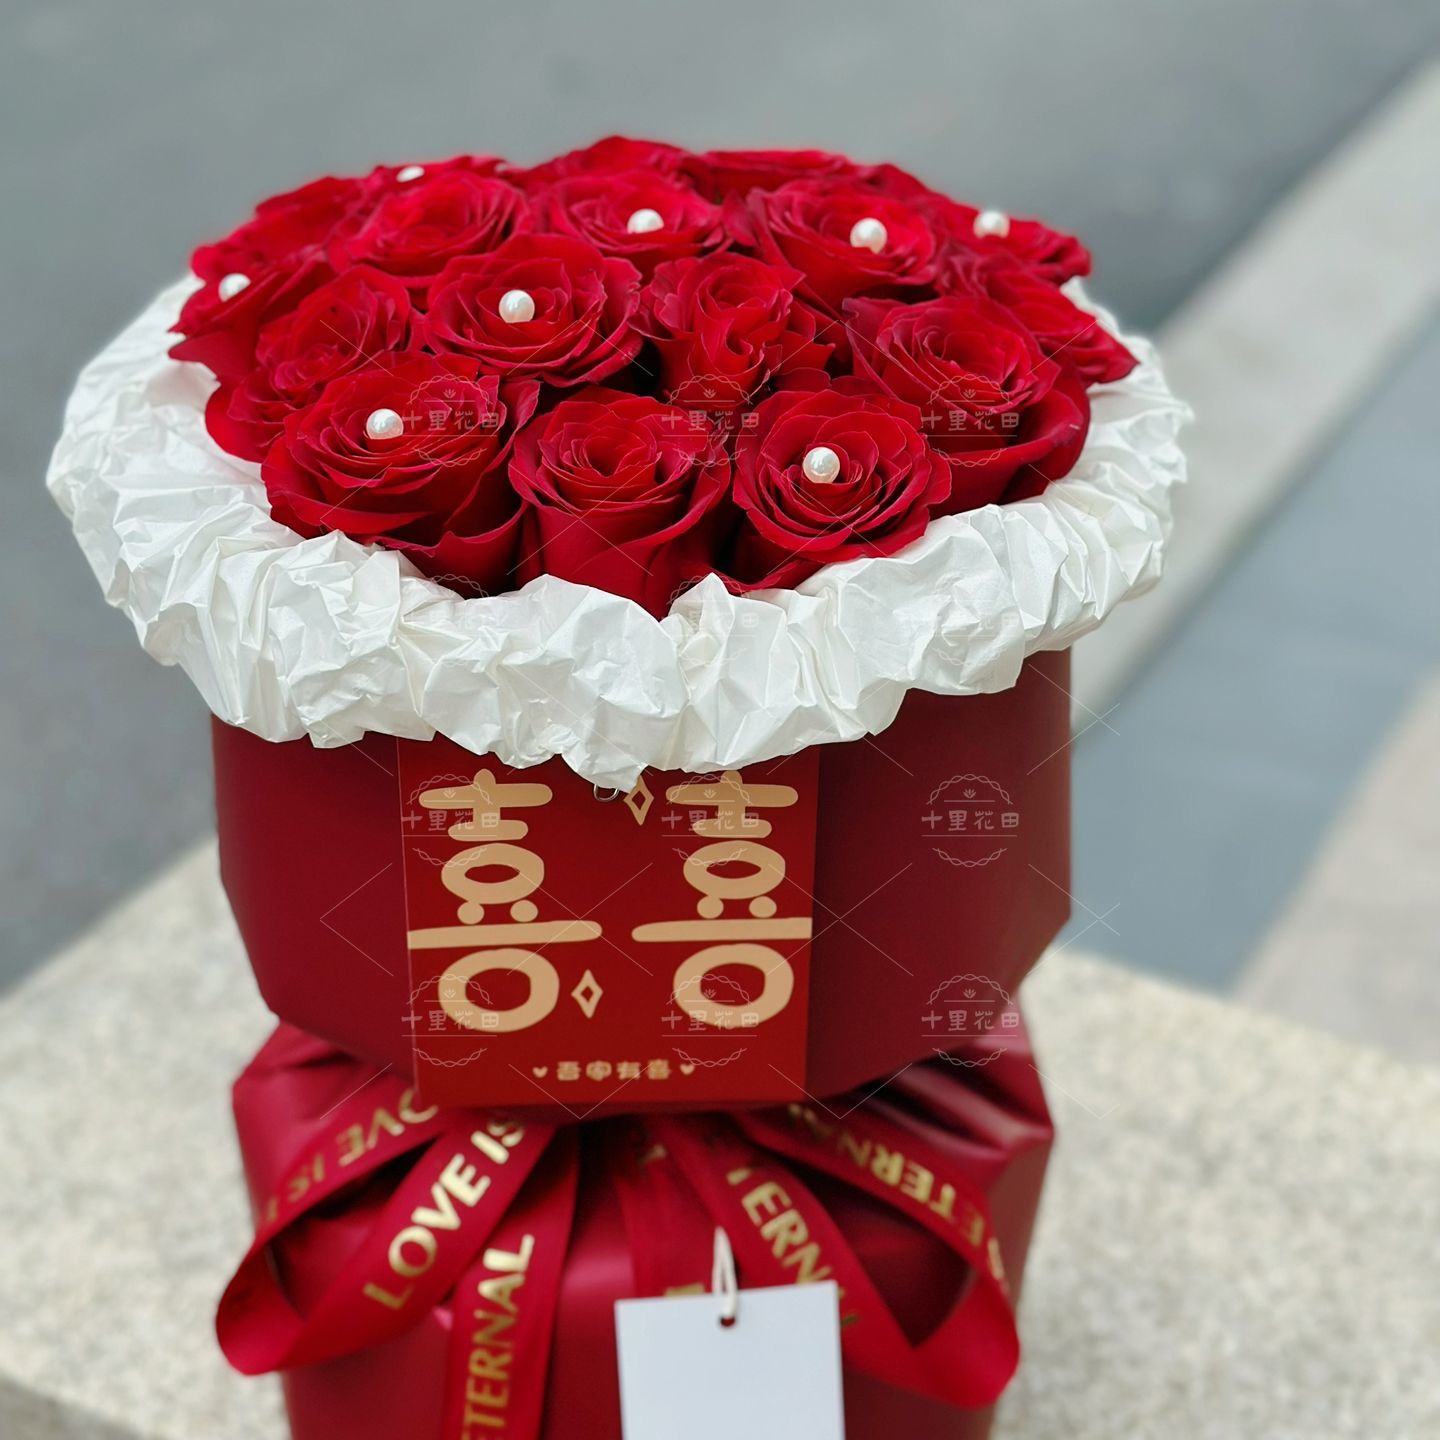 【郎才女貌】19朵红玫瑰花束订婚花束送女友闺蜜爱人生日鲜花店送花上门同城外卖花束免费配送